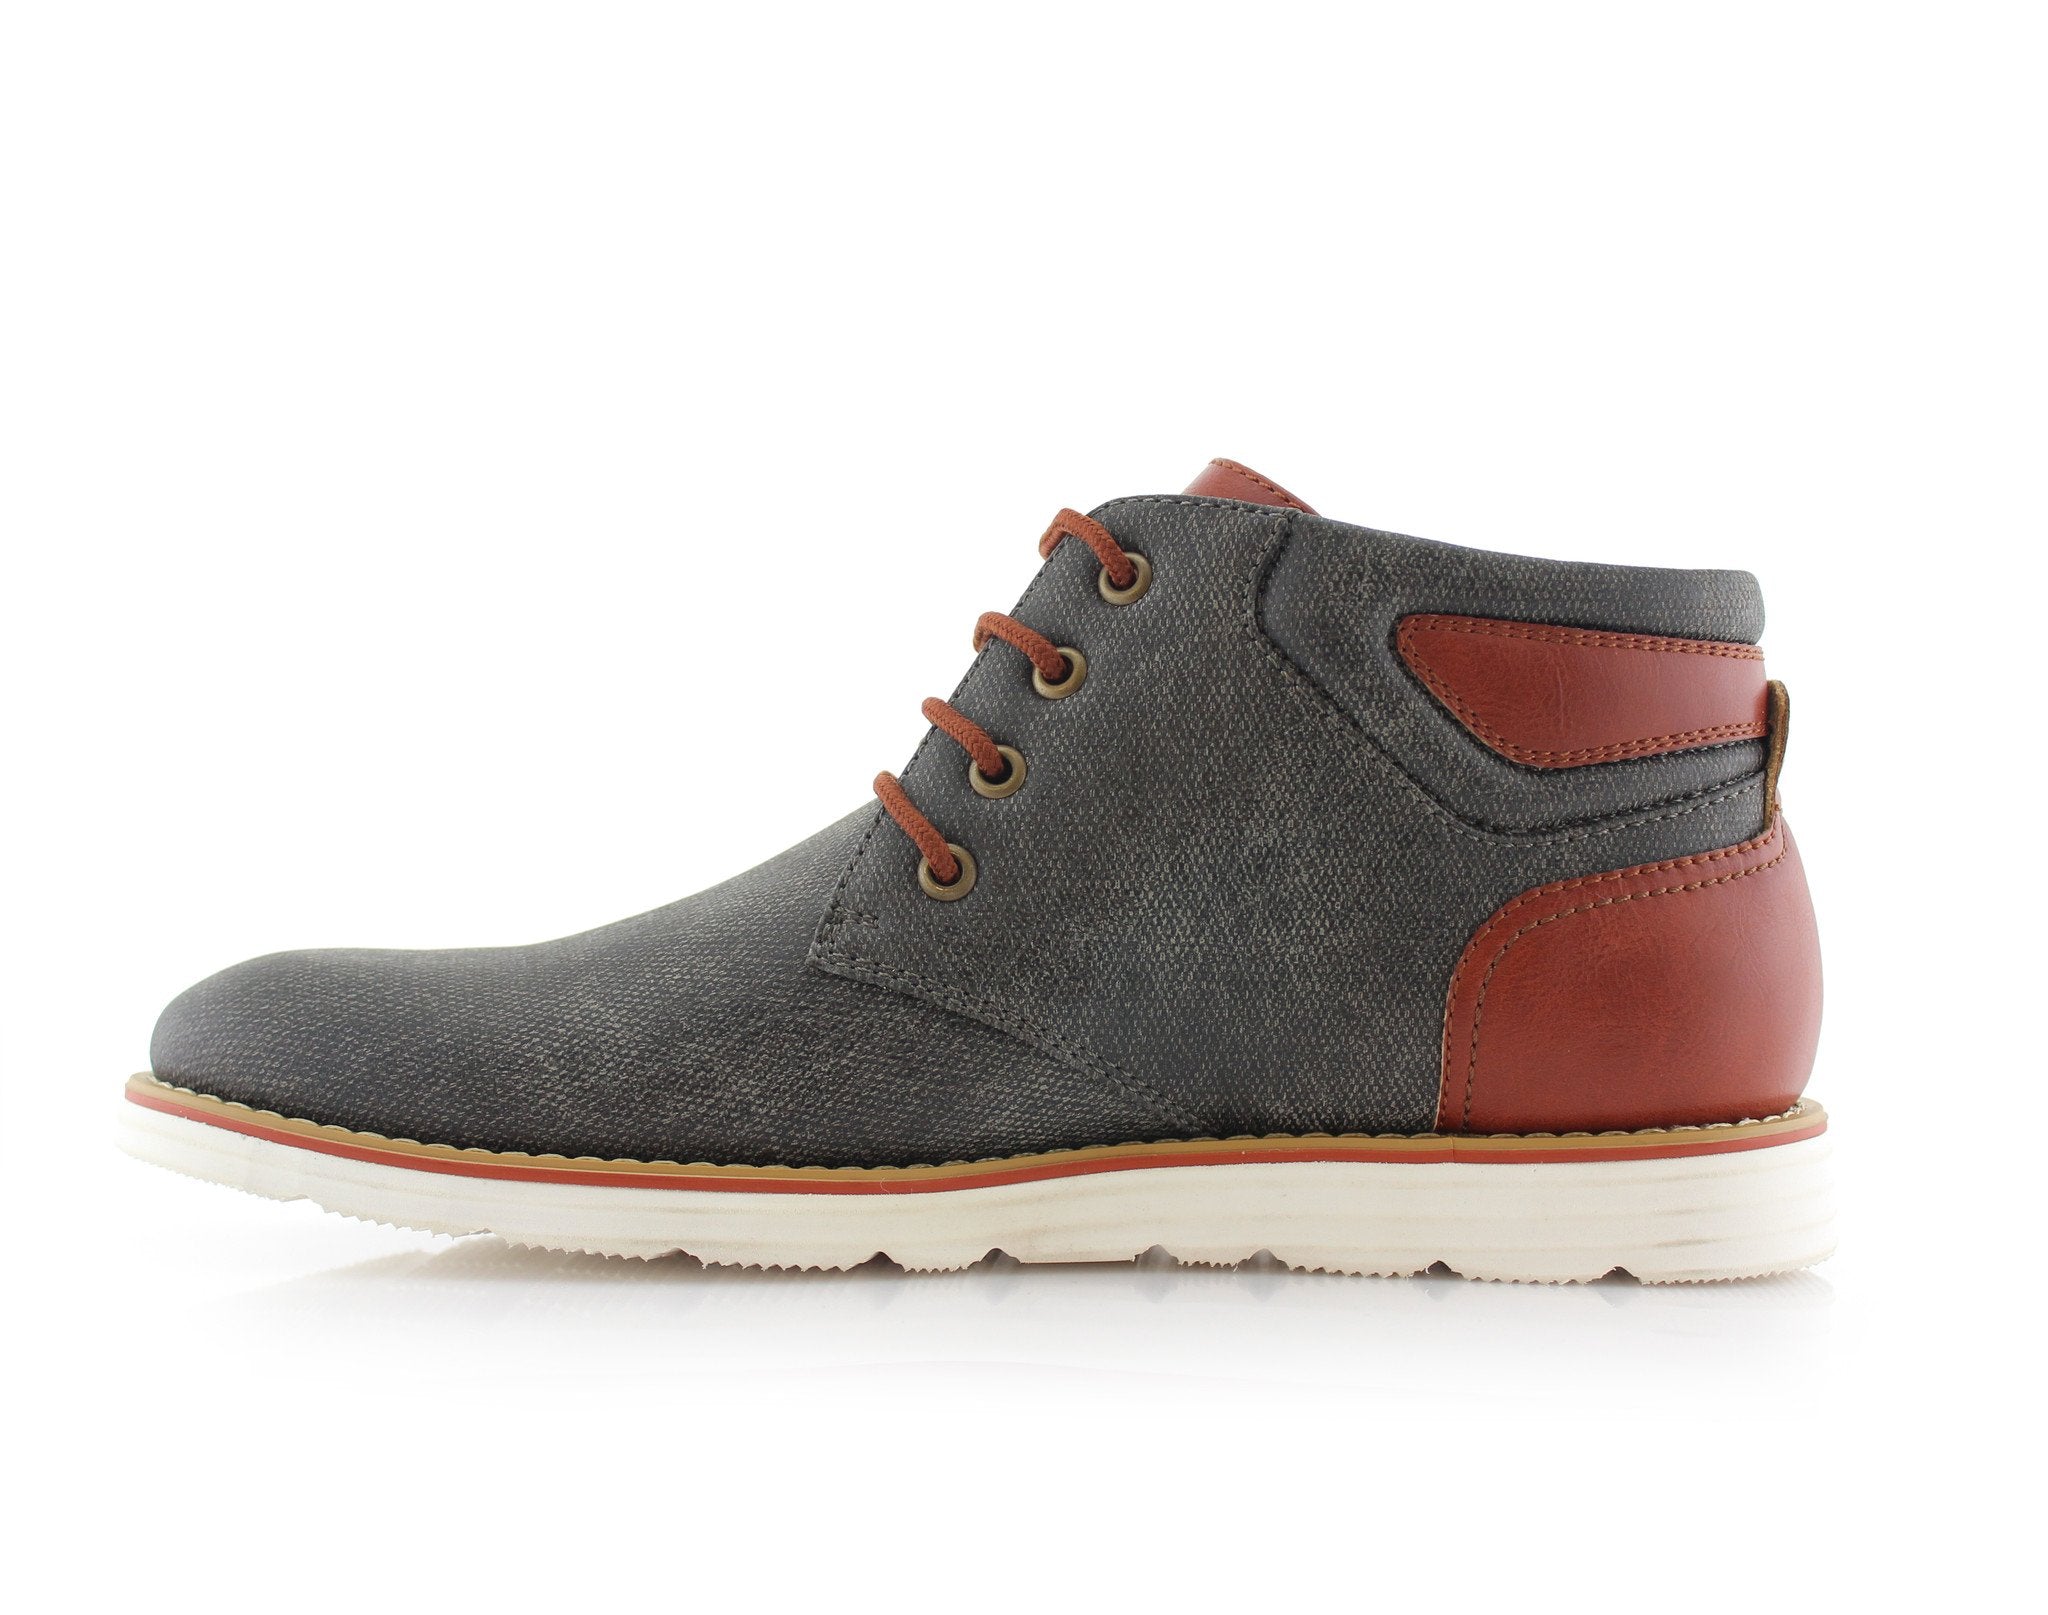 Two-Toned Chukka Sneaker Boots | Owen by Ferro Aldo | Conal Footwear | Inner Side Angle View